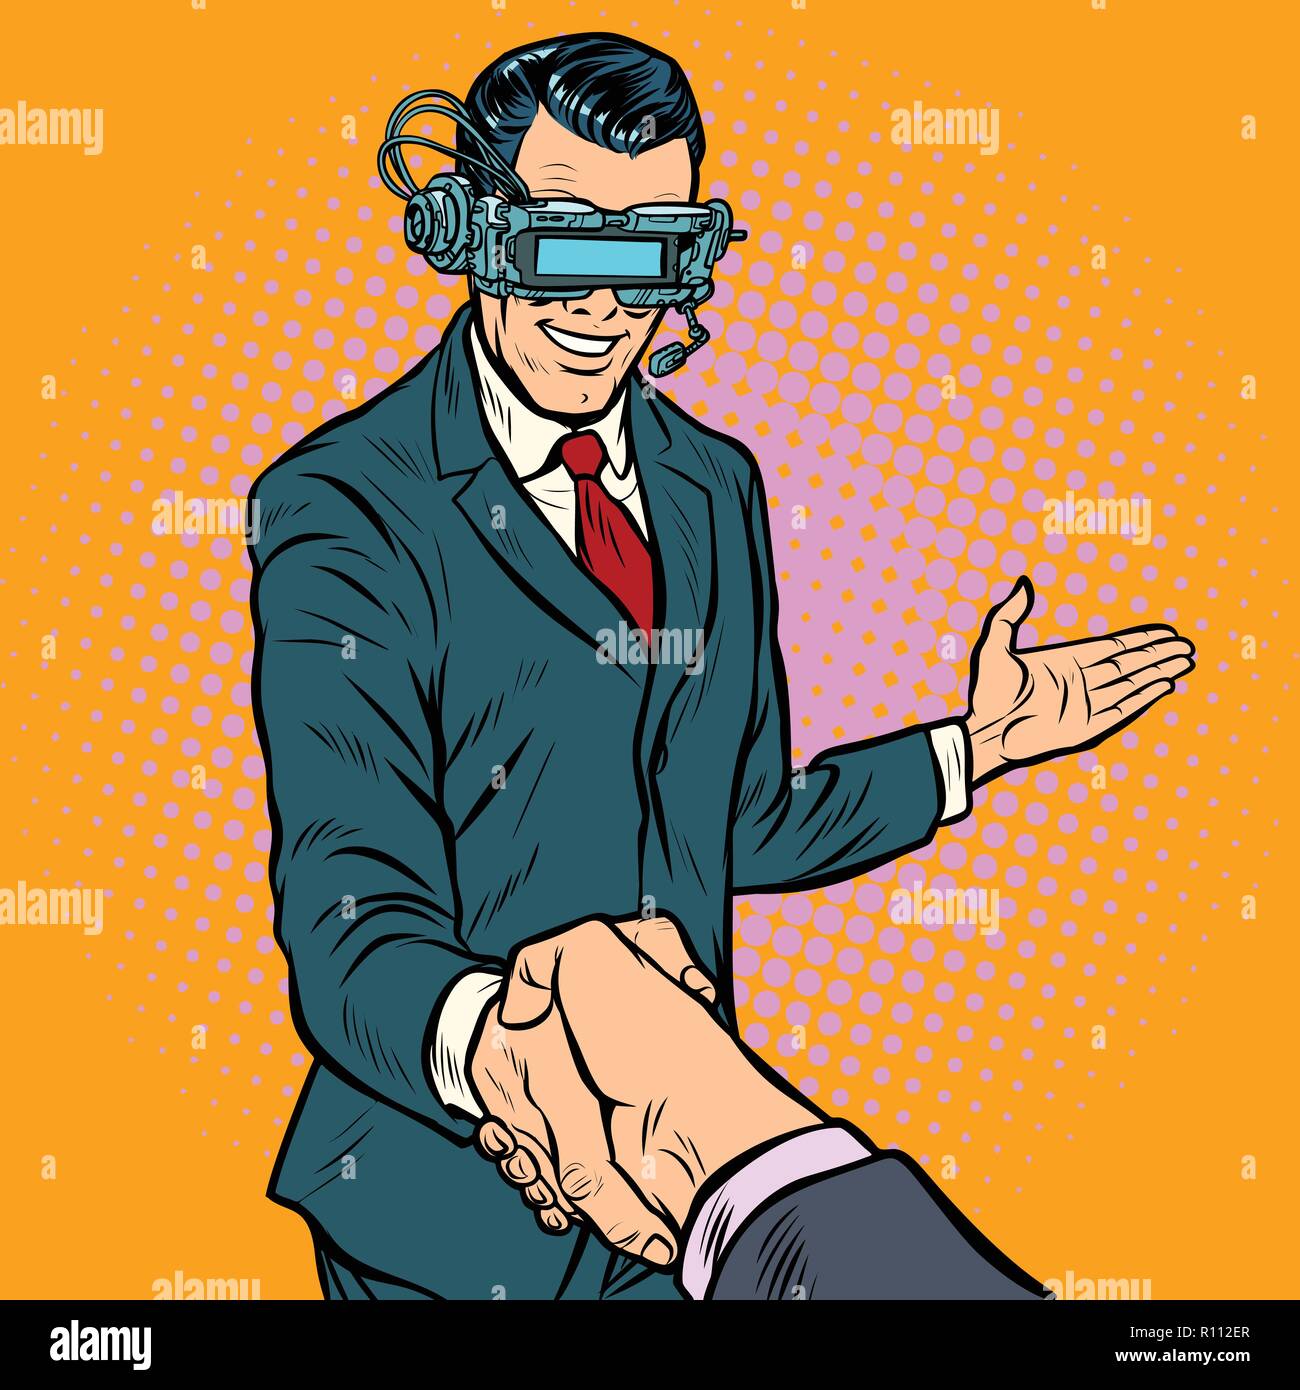 Businessman shaking hands en réalité virtuelle Illustration de Vecteur